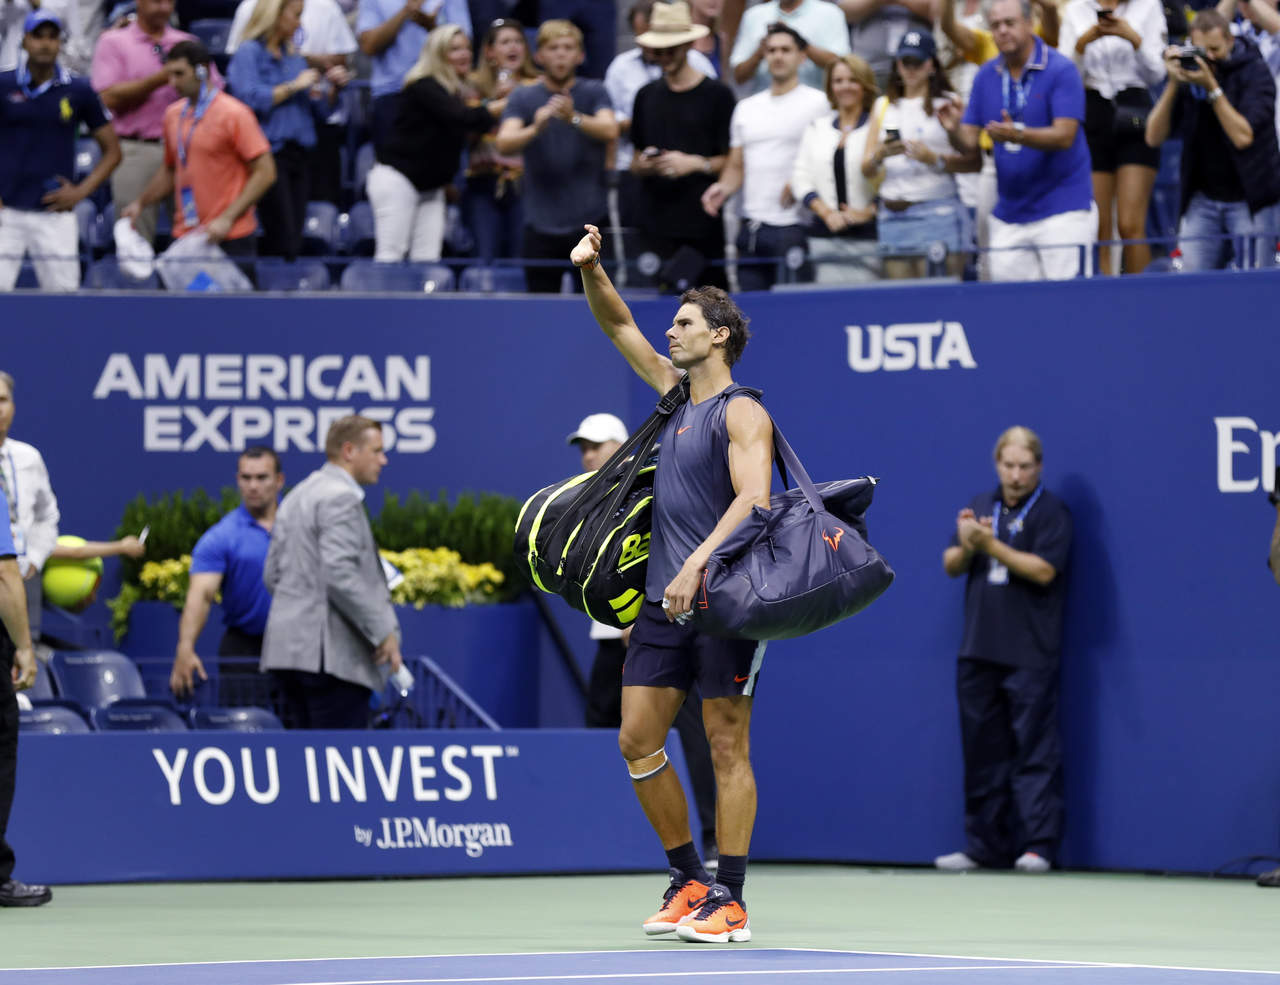 Nadal se lesionó la rodilla durante la semifinal del US Open, viéndose obligado a abandonar el duelo.